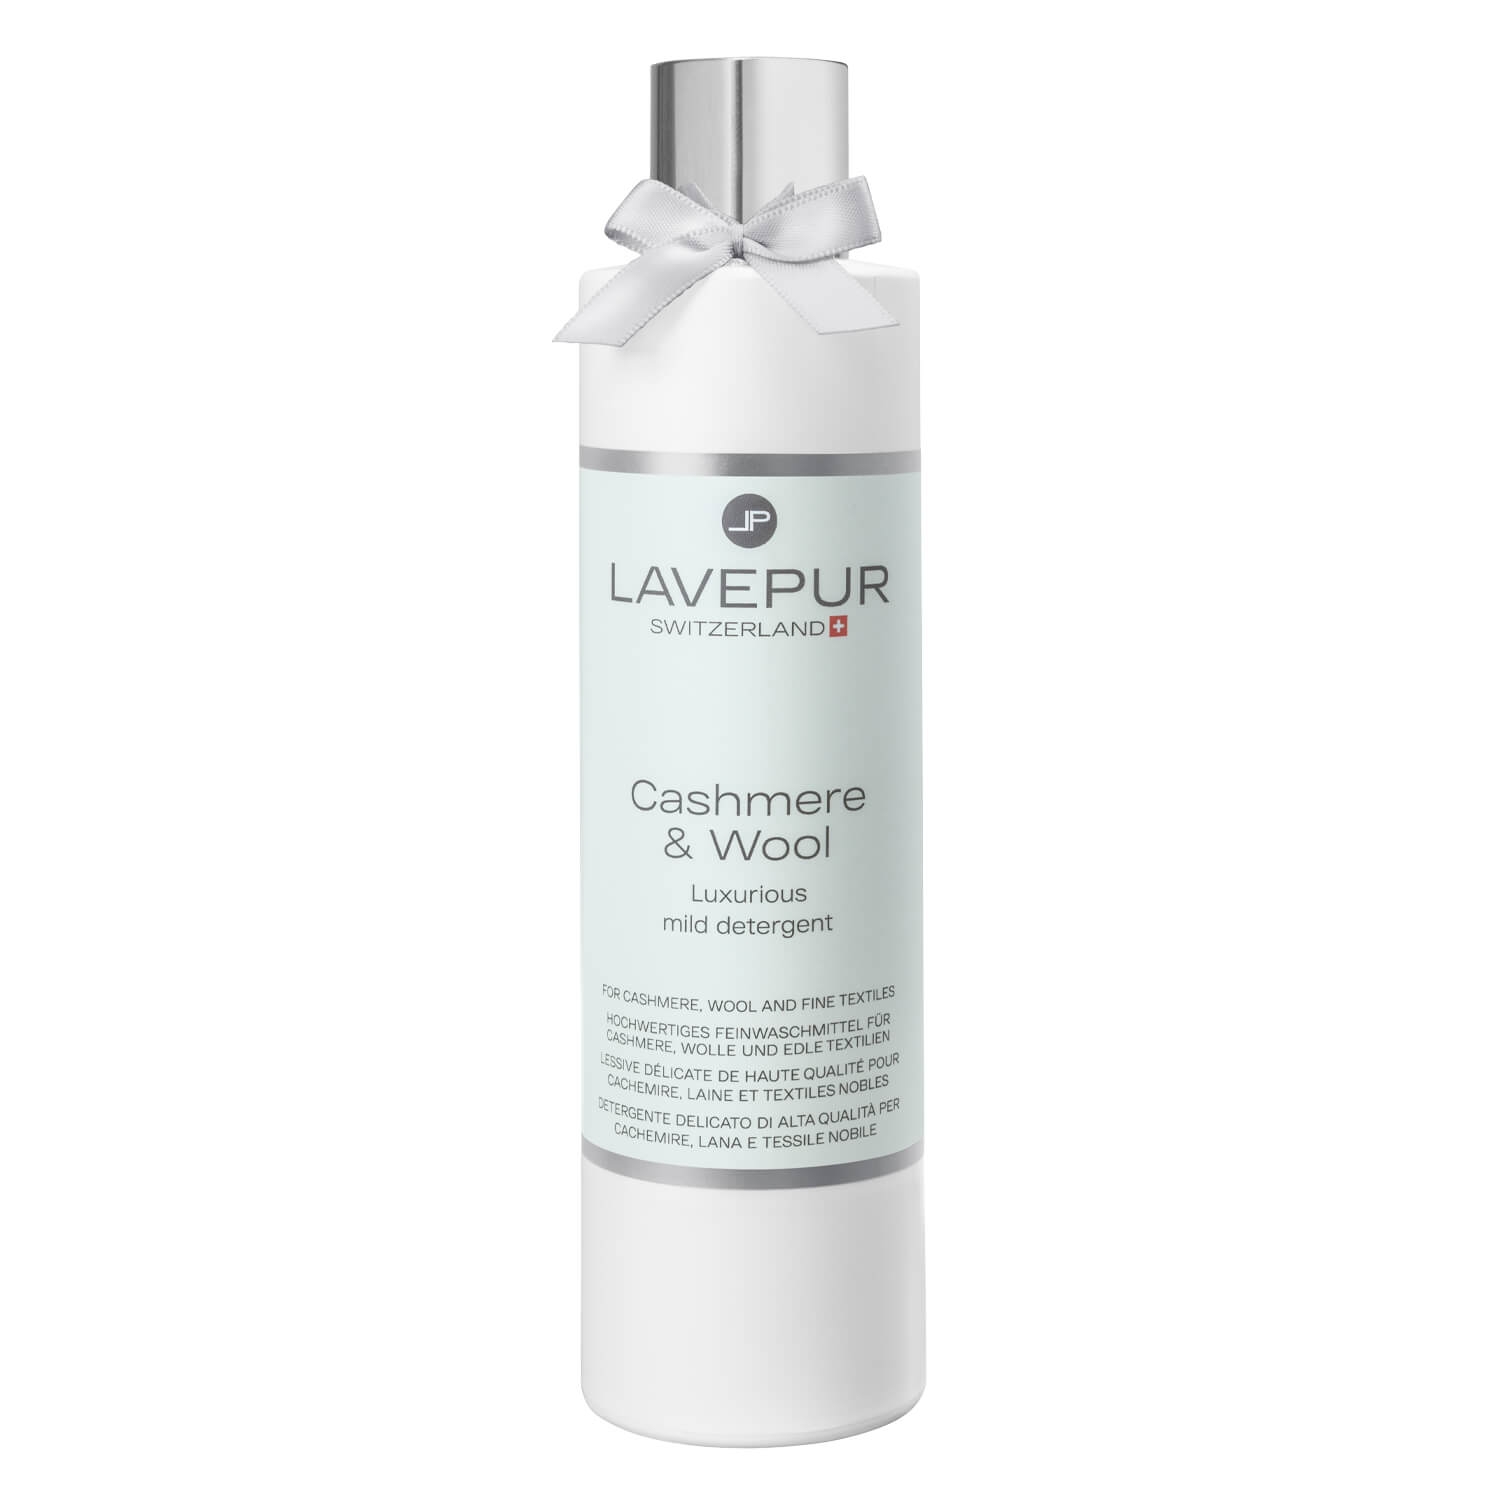 Produktbild von LAVEPUR - Cashmere & Wool Wäsche-Shampoo